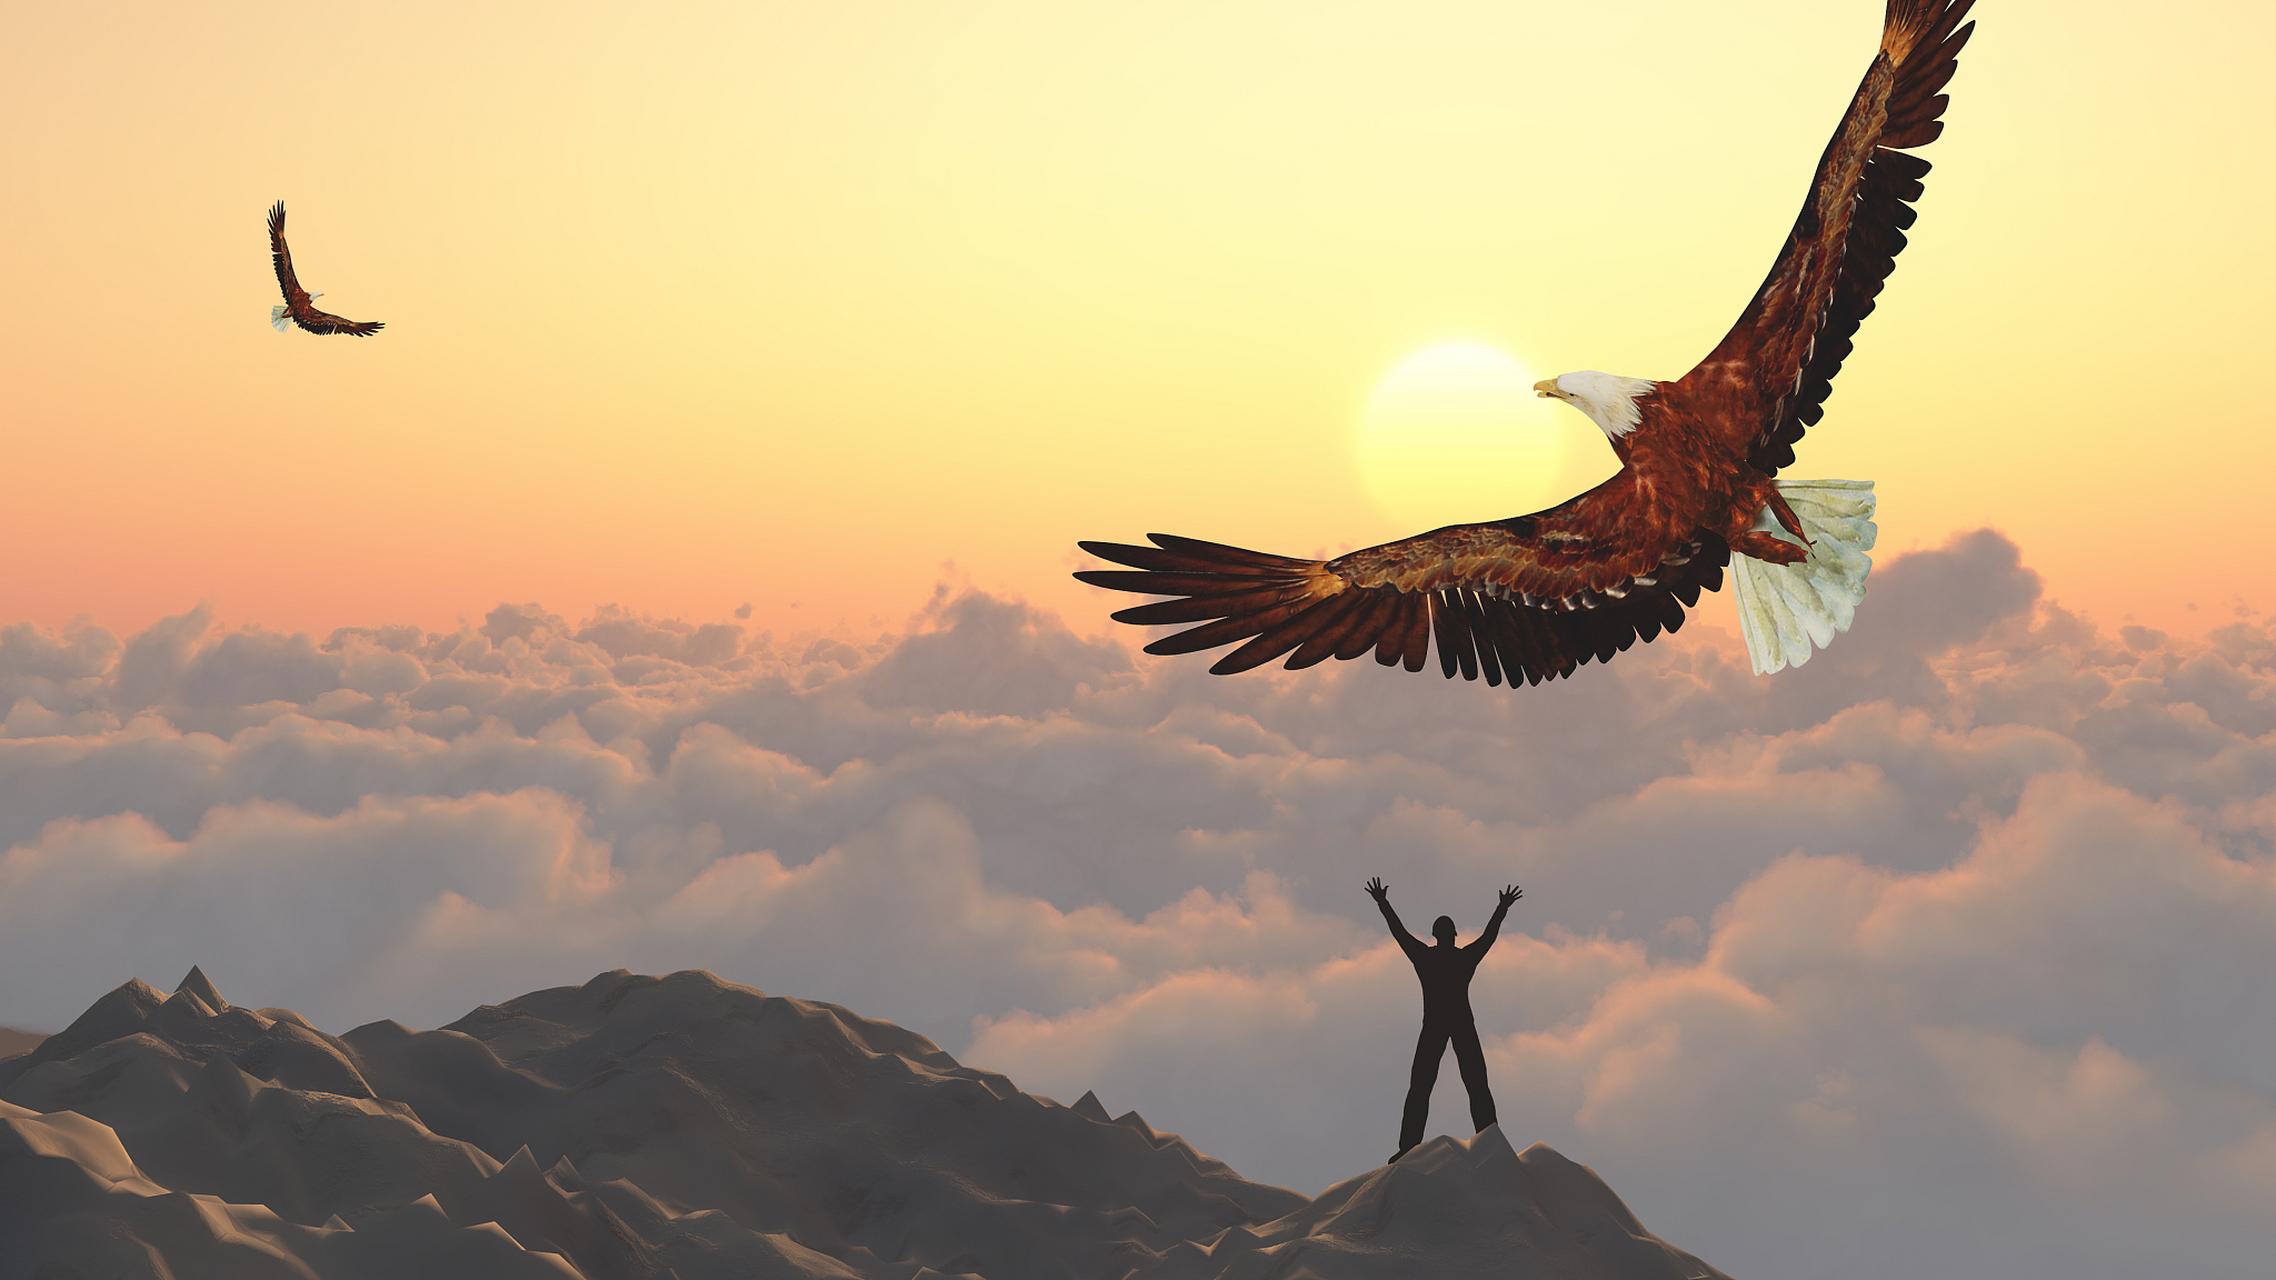 天空中,一只雄鹰展翅高飞,身姿矫健,让人不禁感叹自然的神奇